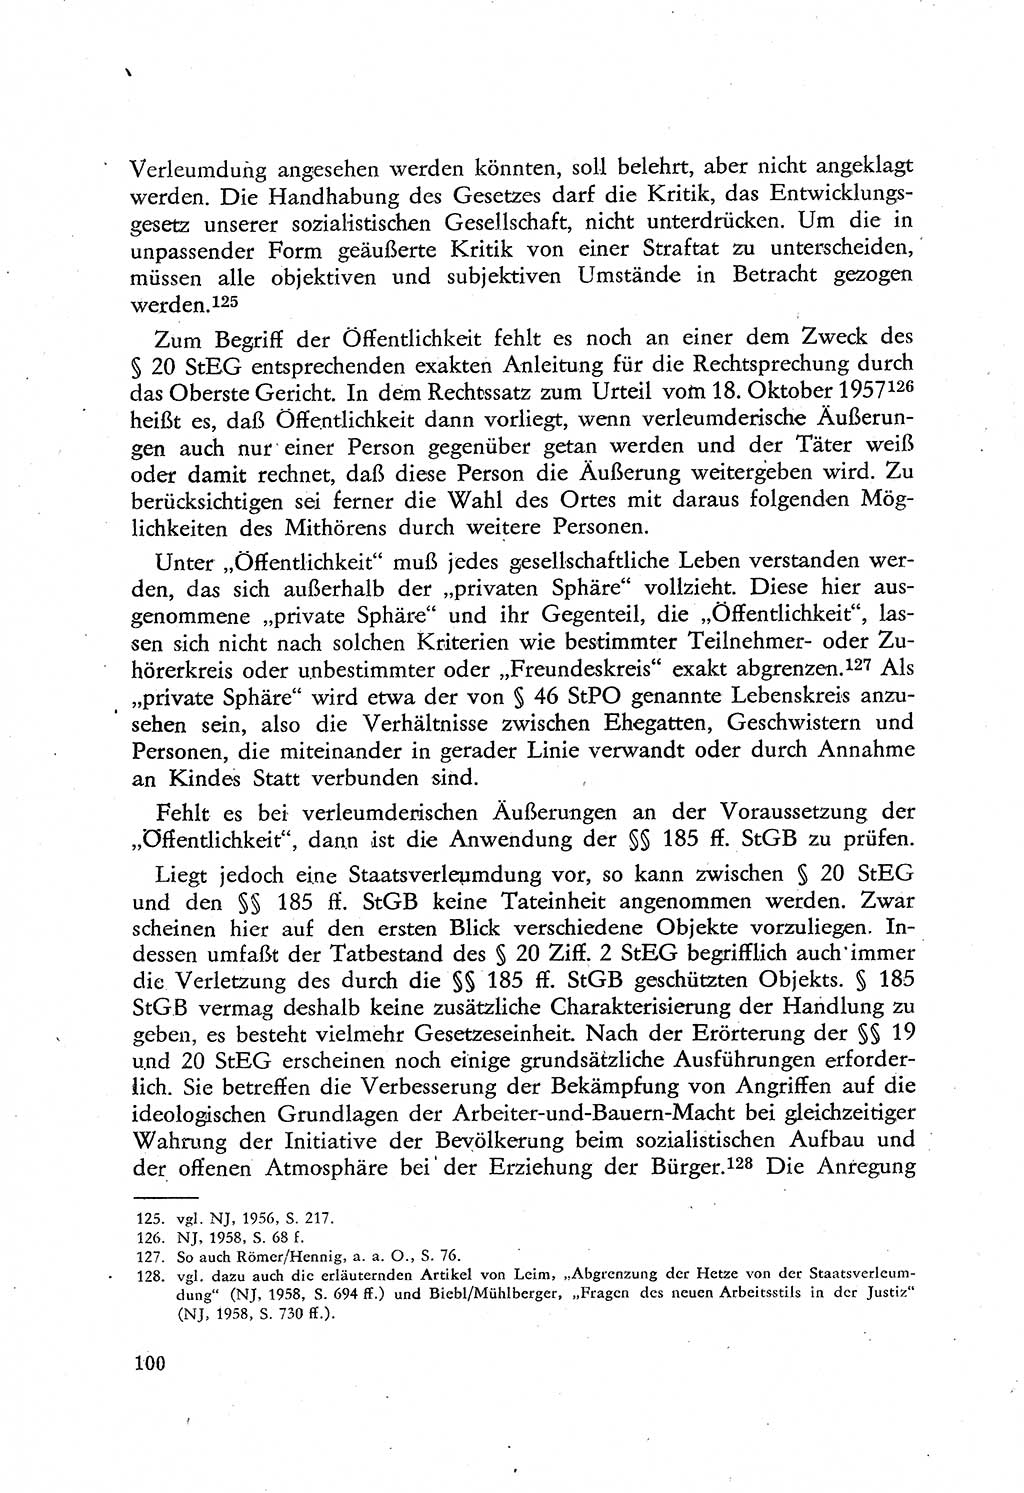 Beiträge zum Strafrecht [Deutsche Demokratische Republik (DDR)], Staatsverbrechen 1959, Seite 100 (Beitr. Strafr. DDR St.-Verbr. 1959, S. 100)